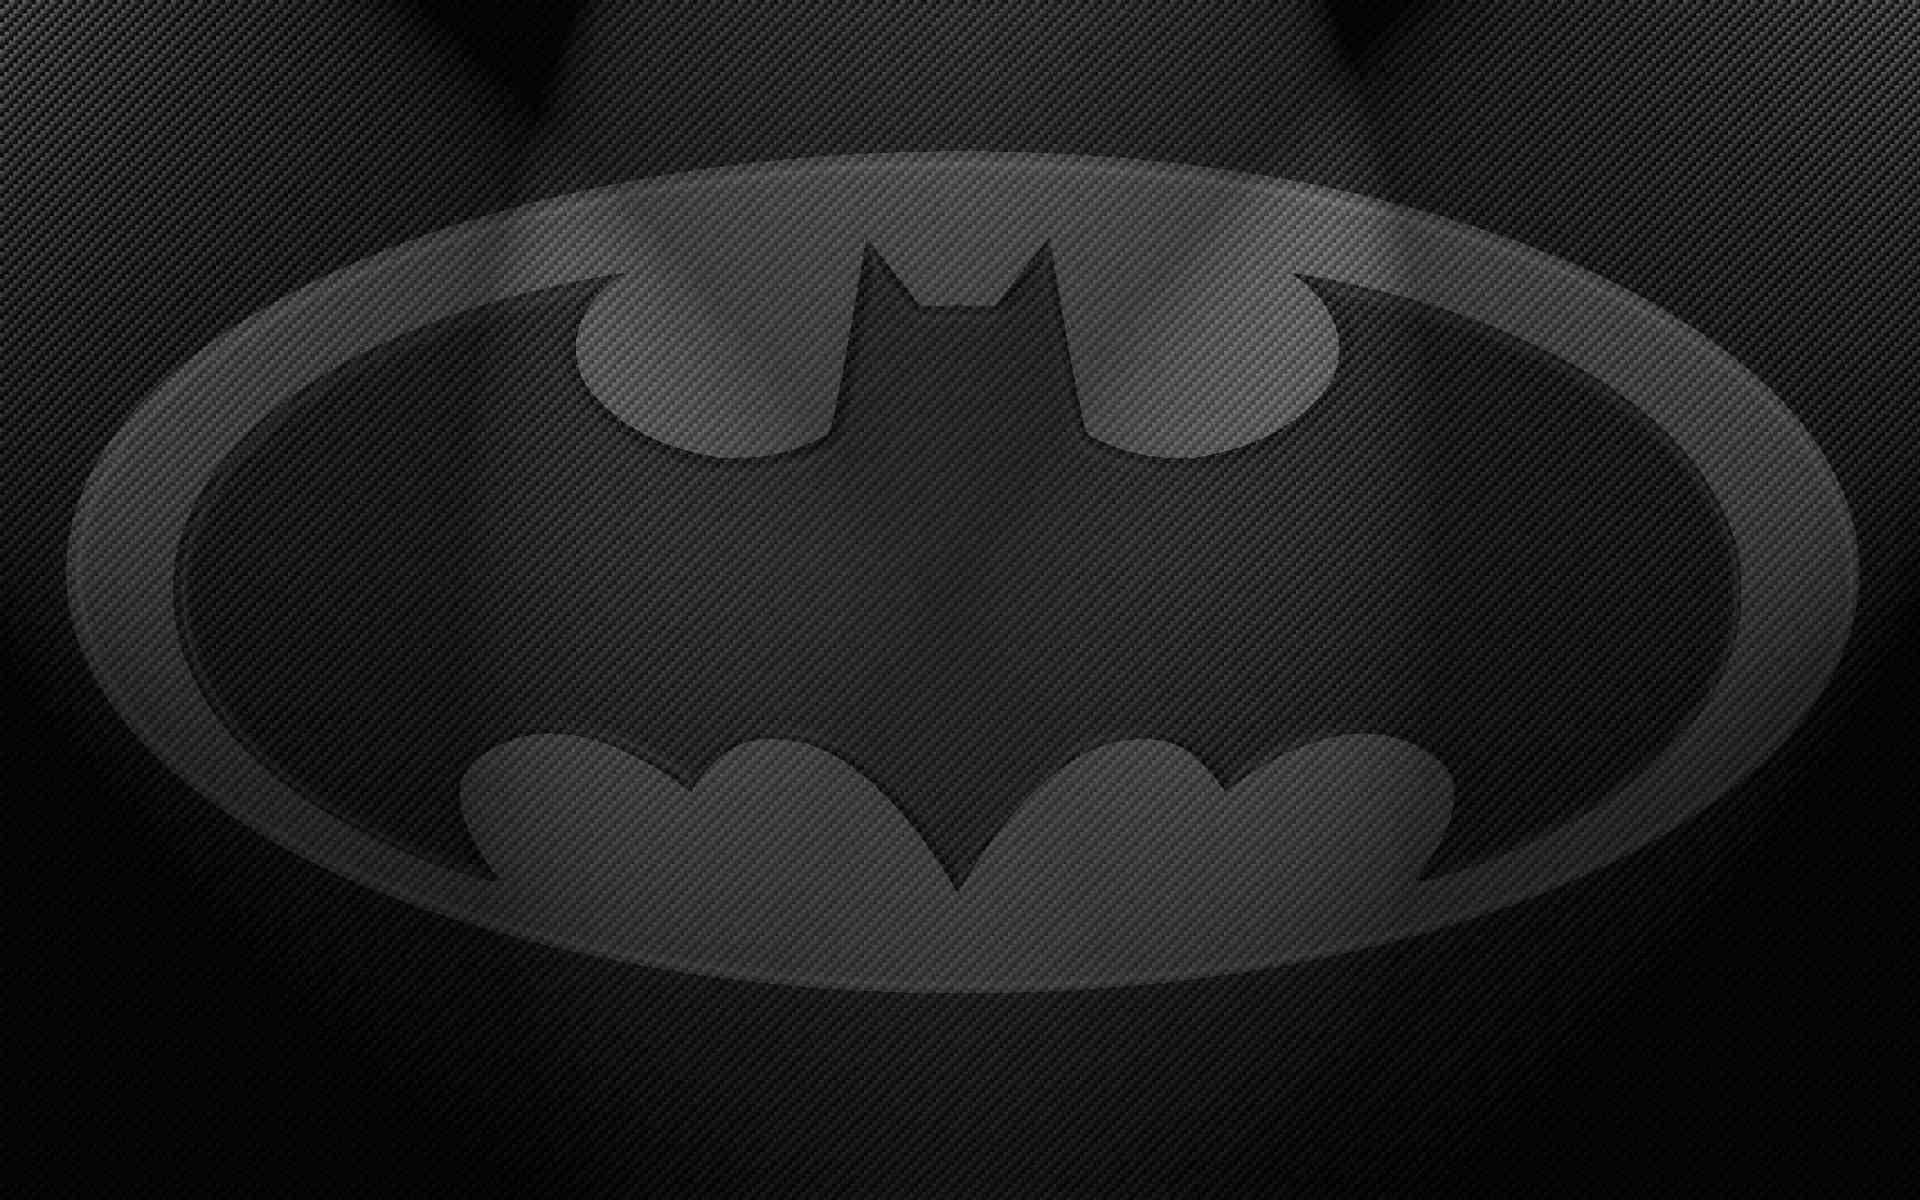 batman logo wallpaper android